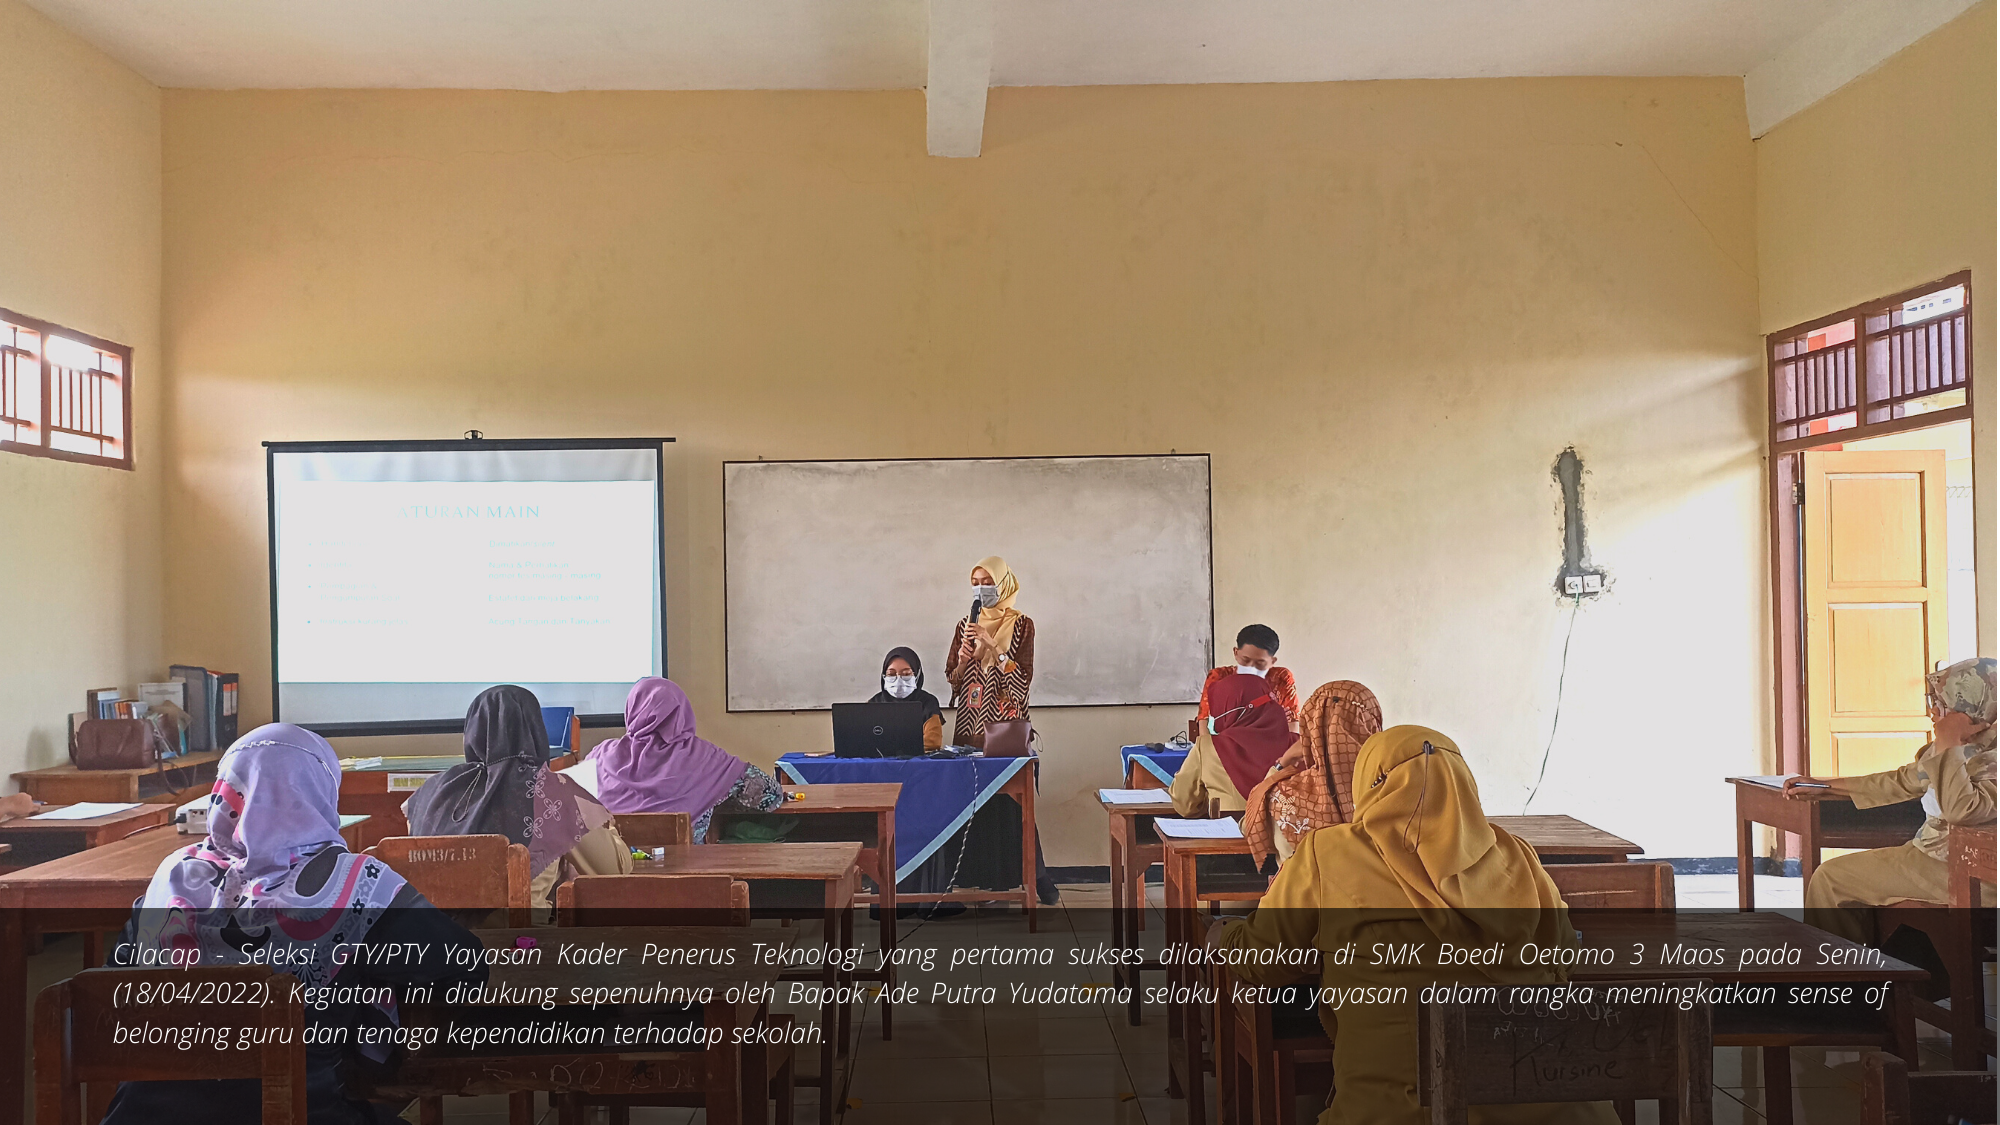 Dalam Rangka Meningkatkan Sense of Belonging terhadap Sekolah, Yayasan Kader Penerus Teknologi Mengadakan Seleksi GTY/PTY di SMK Boedi Oetomo 3 Maos